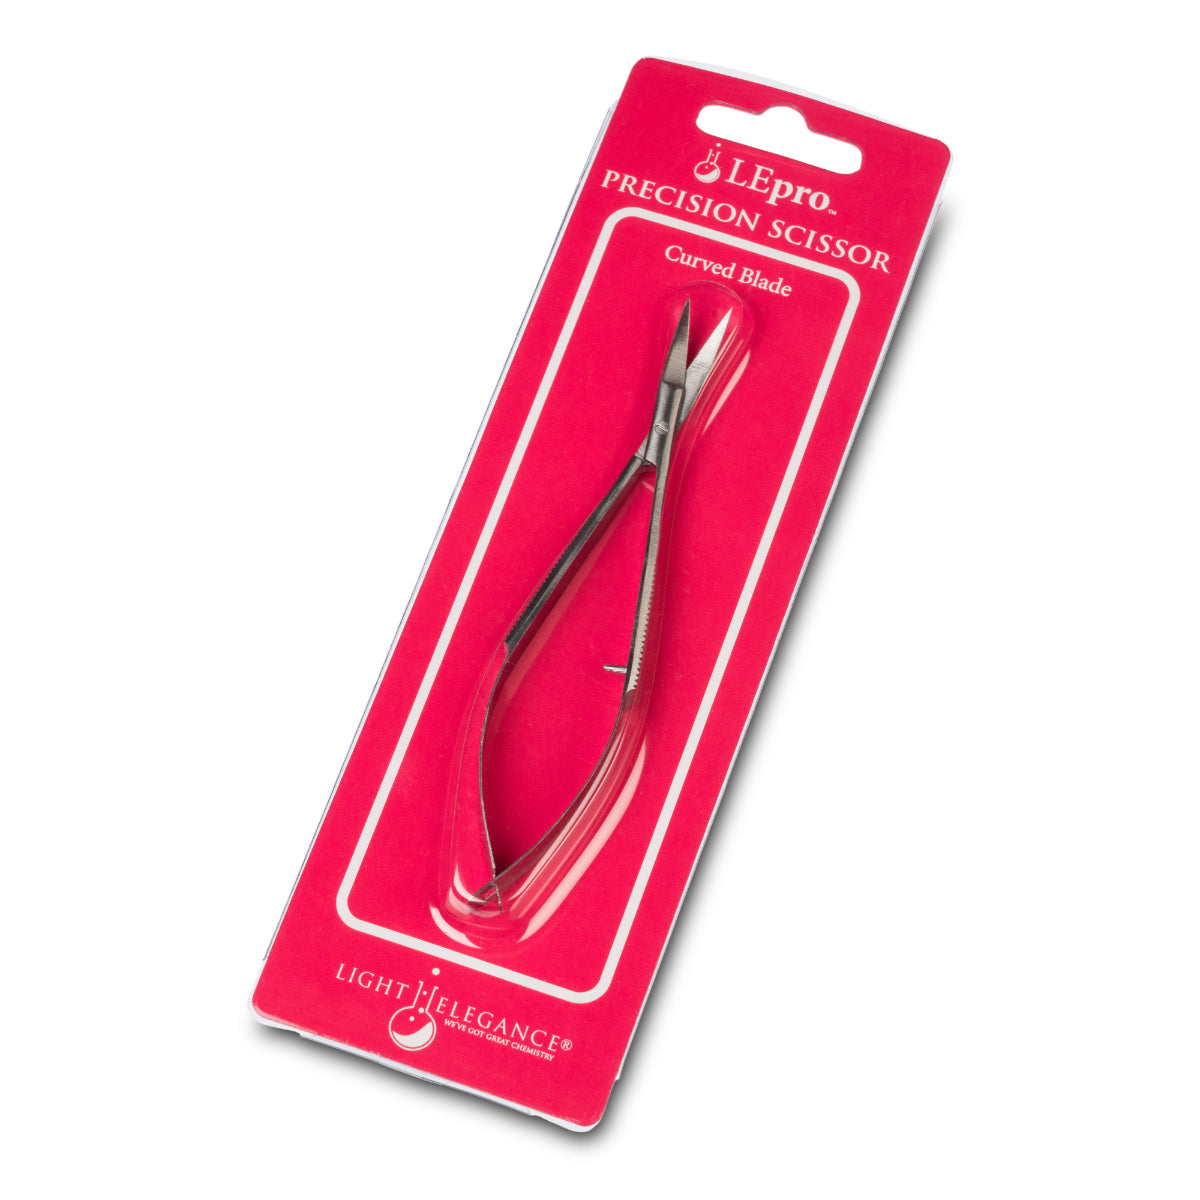 LEpro Precision Scissor - Curved Blade